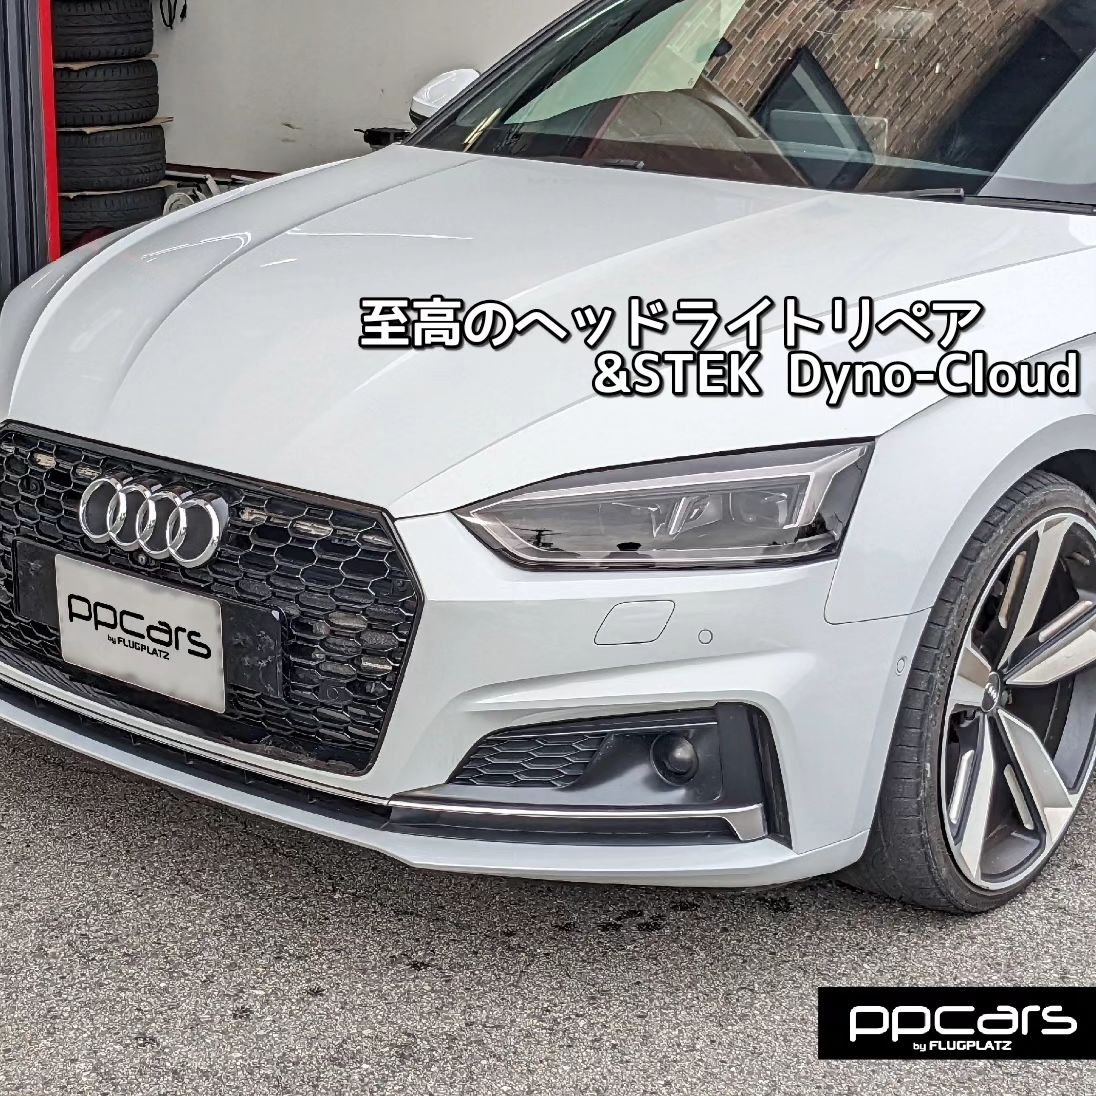 Audi A5(F5/B9) Sportback x 至高のヘッドライトリペア&STEK DYNO Cloud